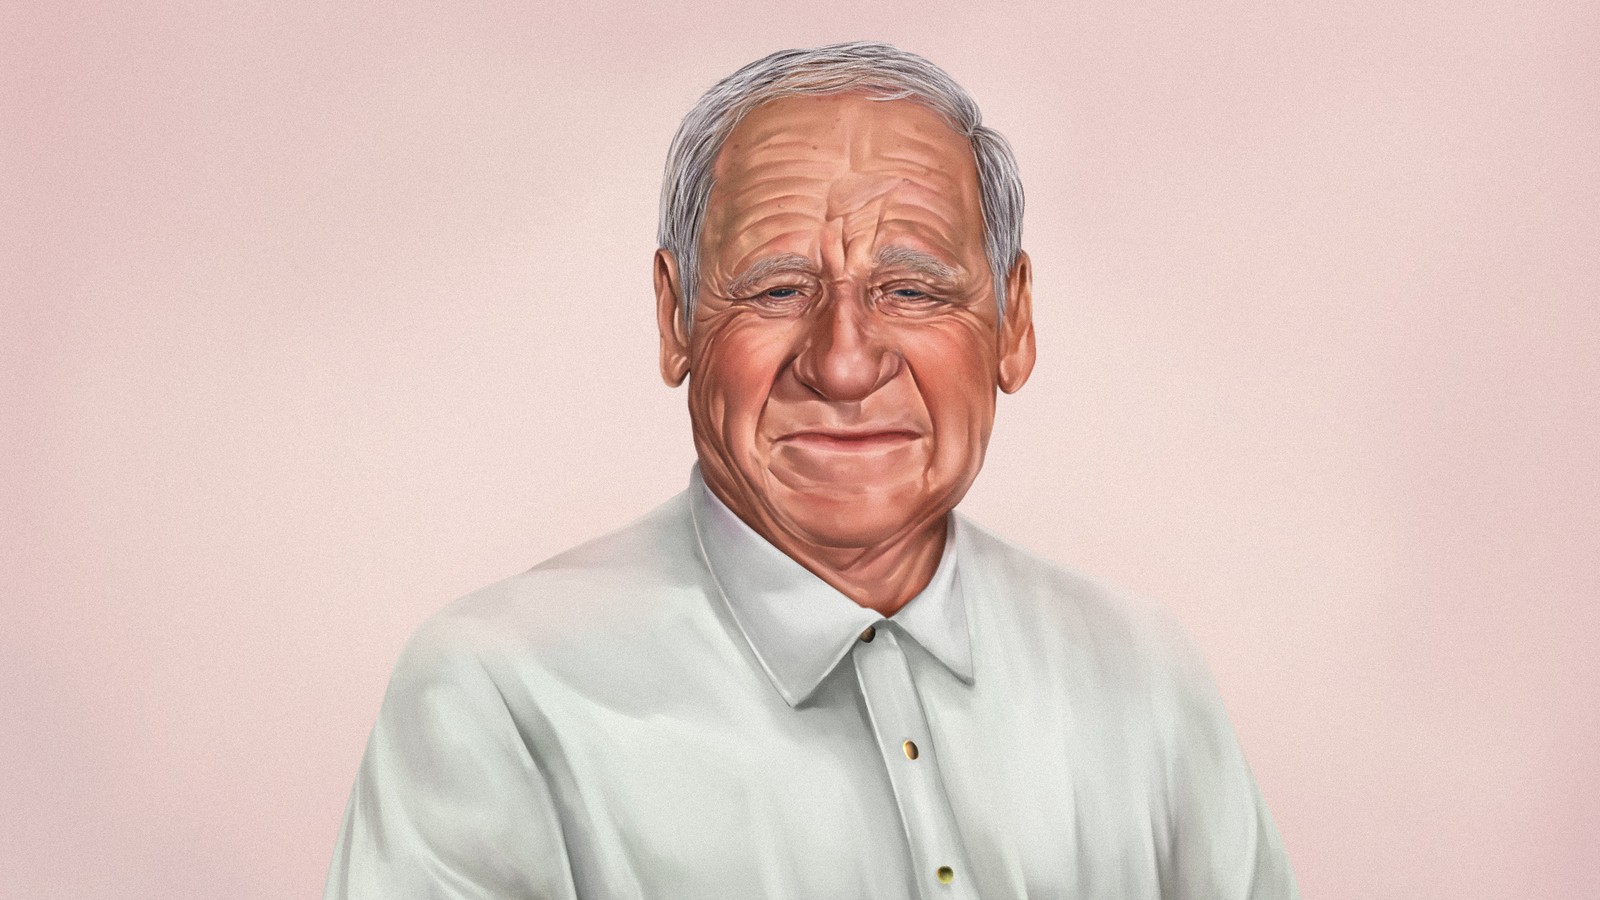 elderly man portrait